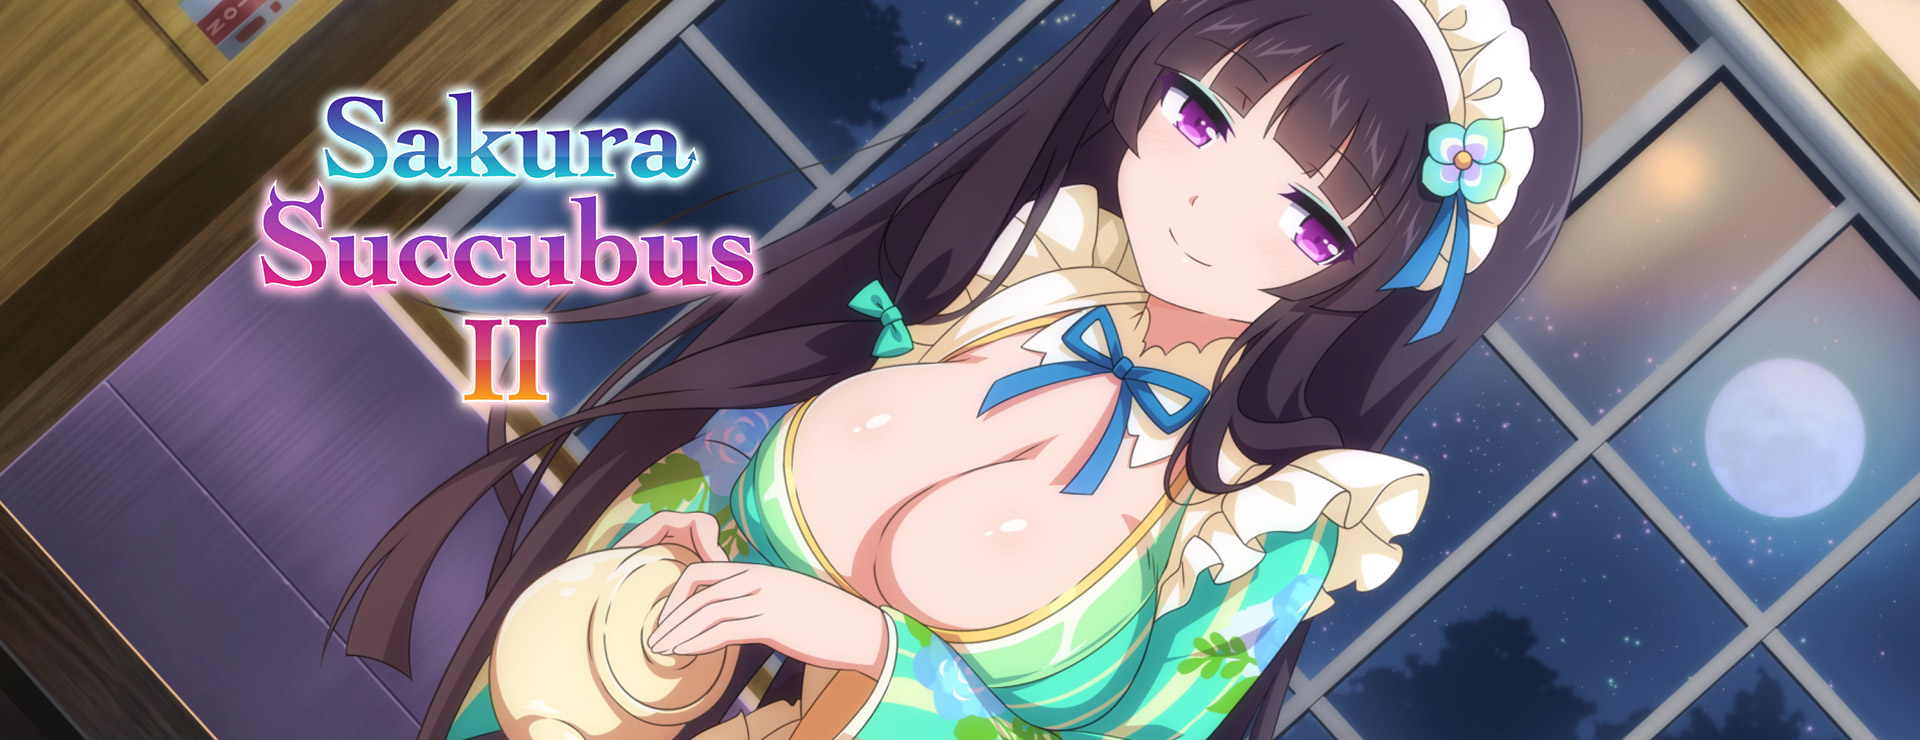 Sakura Succubus 2 - Novela Visual Juego